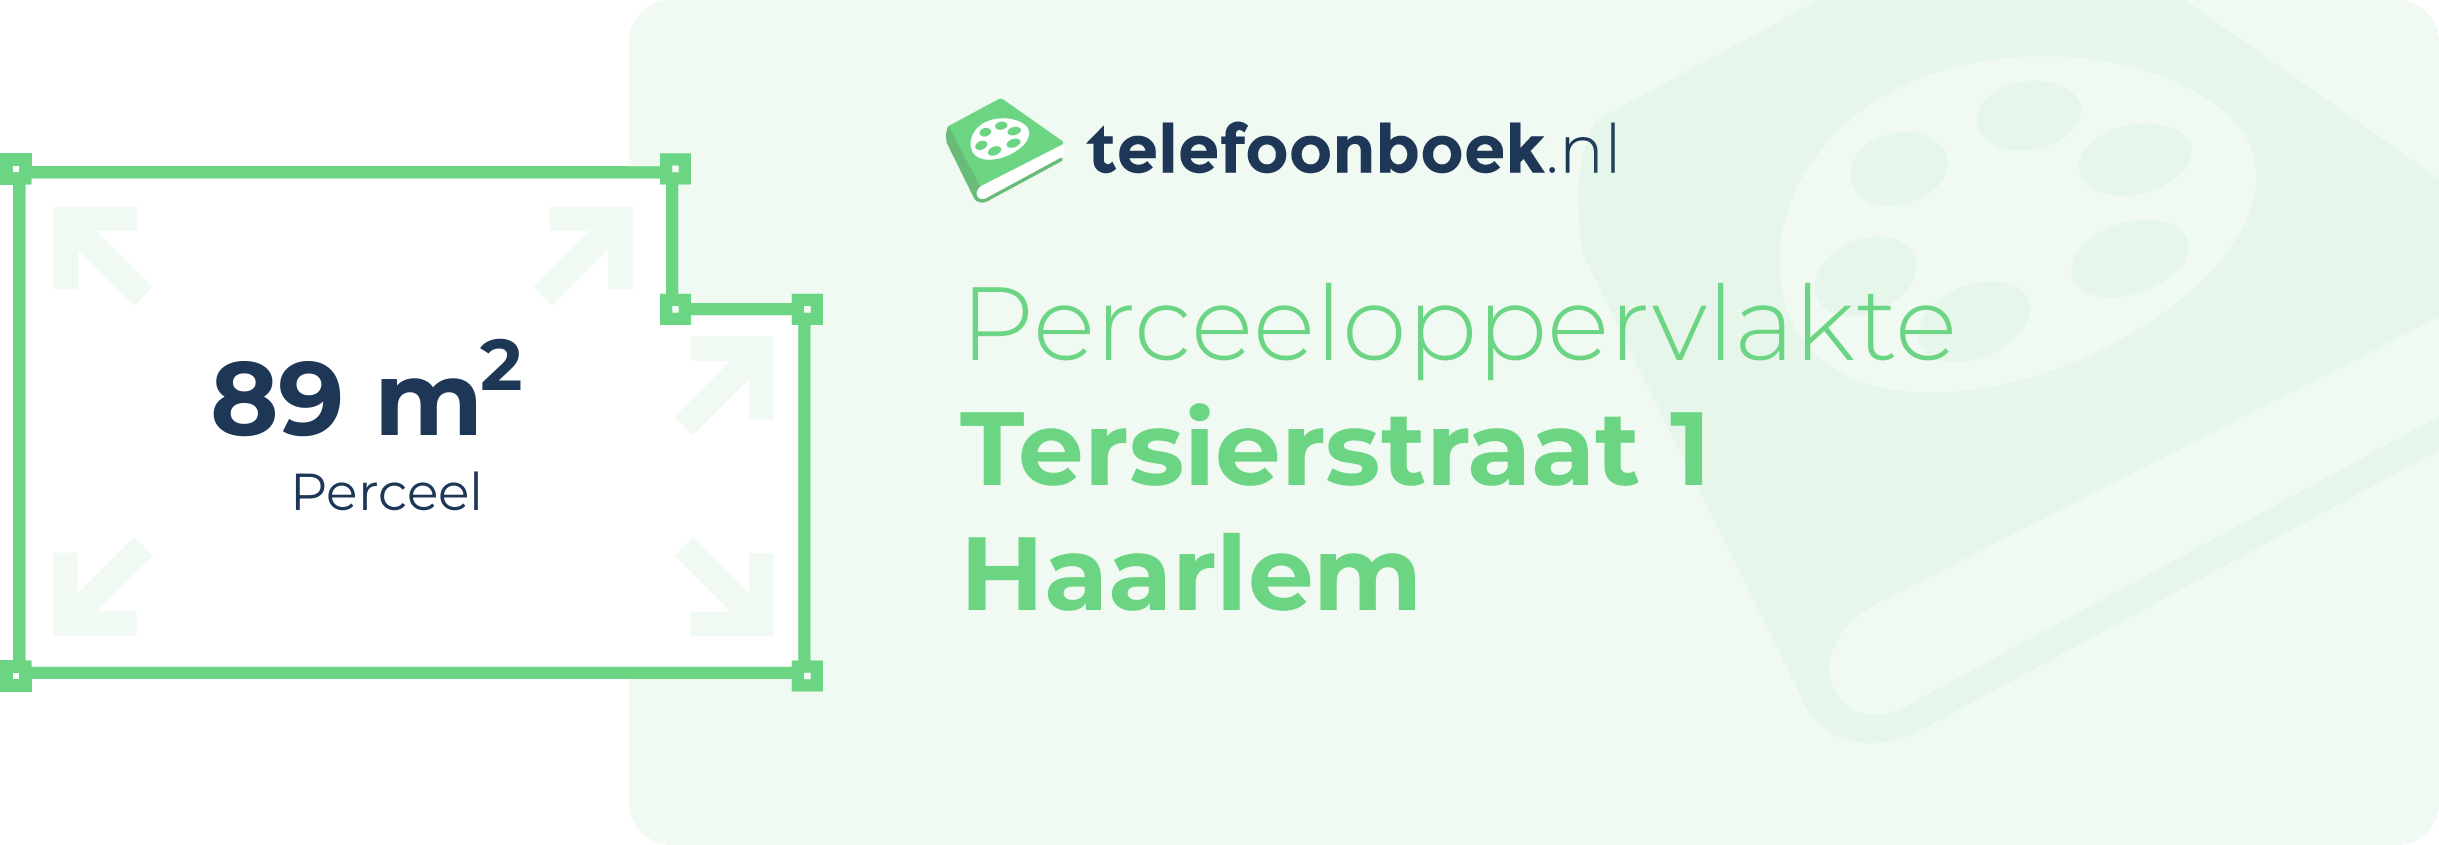 Perceeloppervlakte Tersierstraat 1 Haarlem